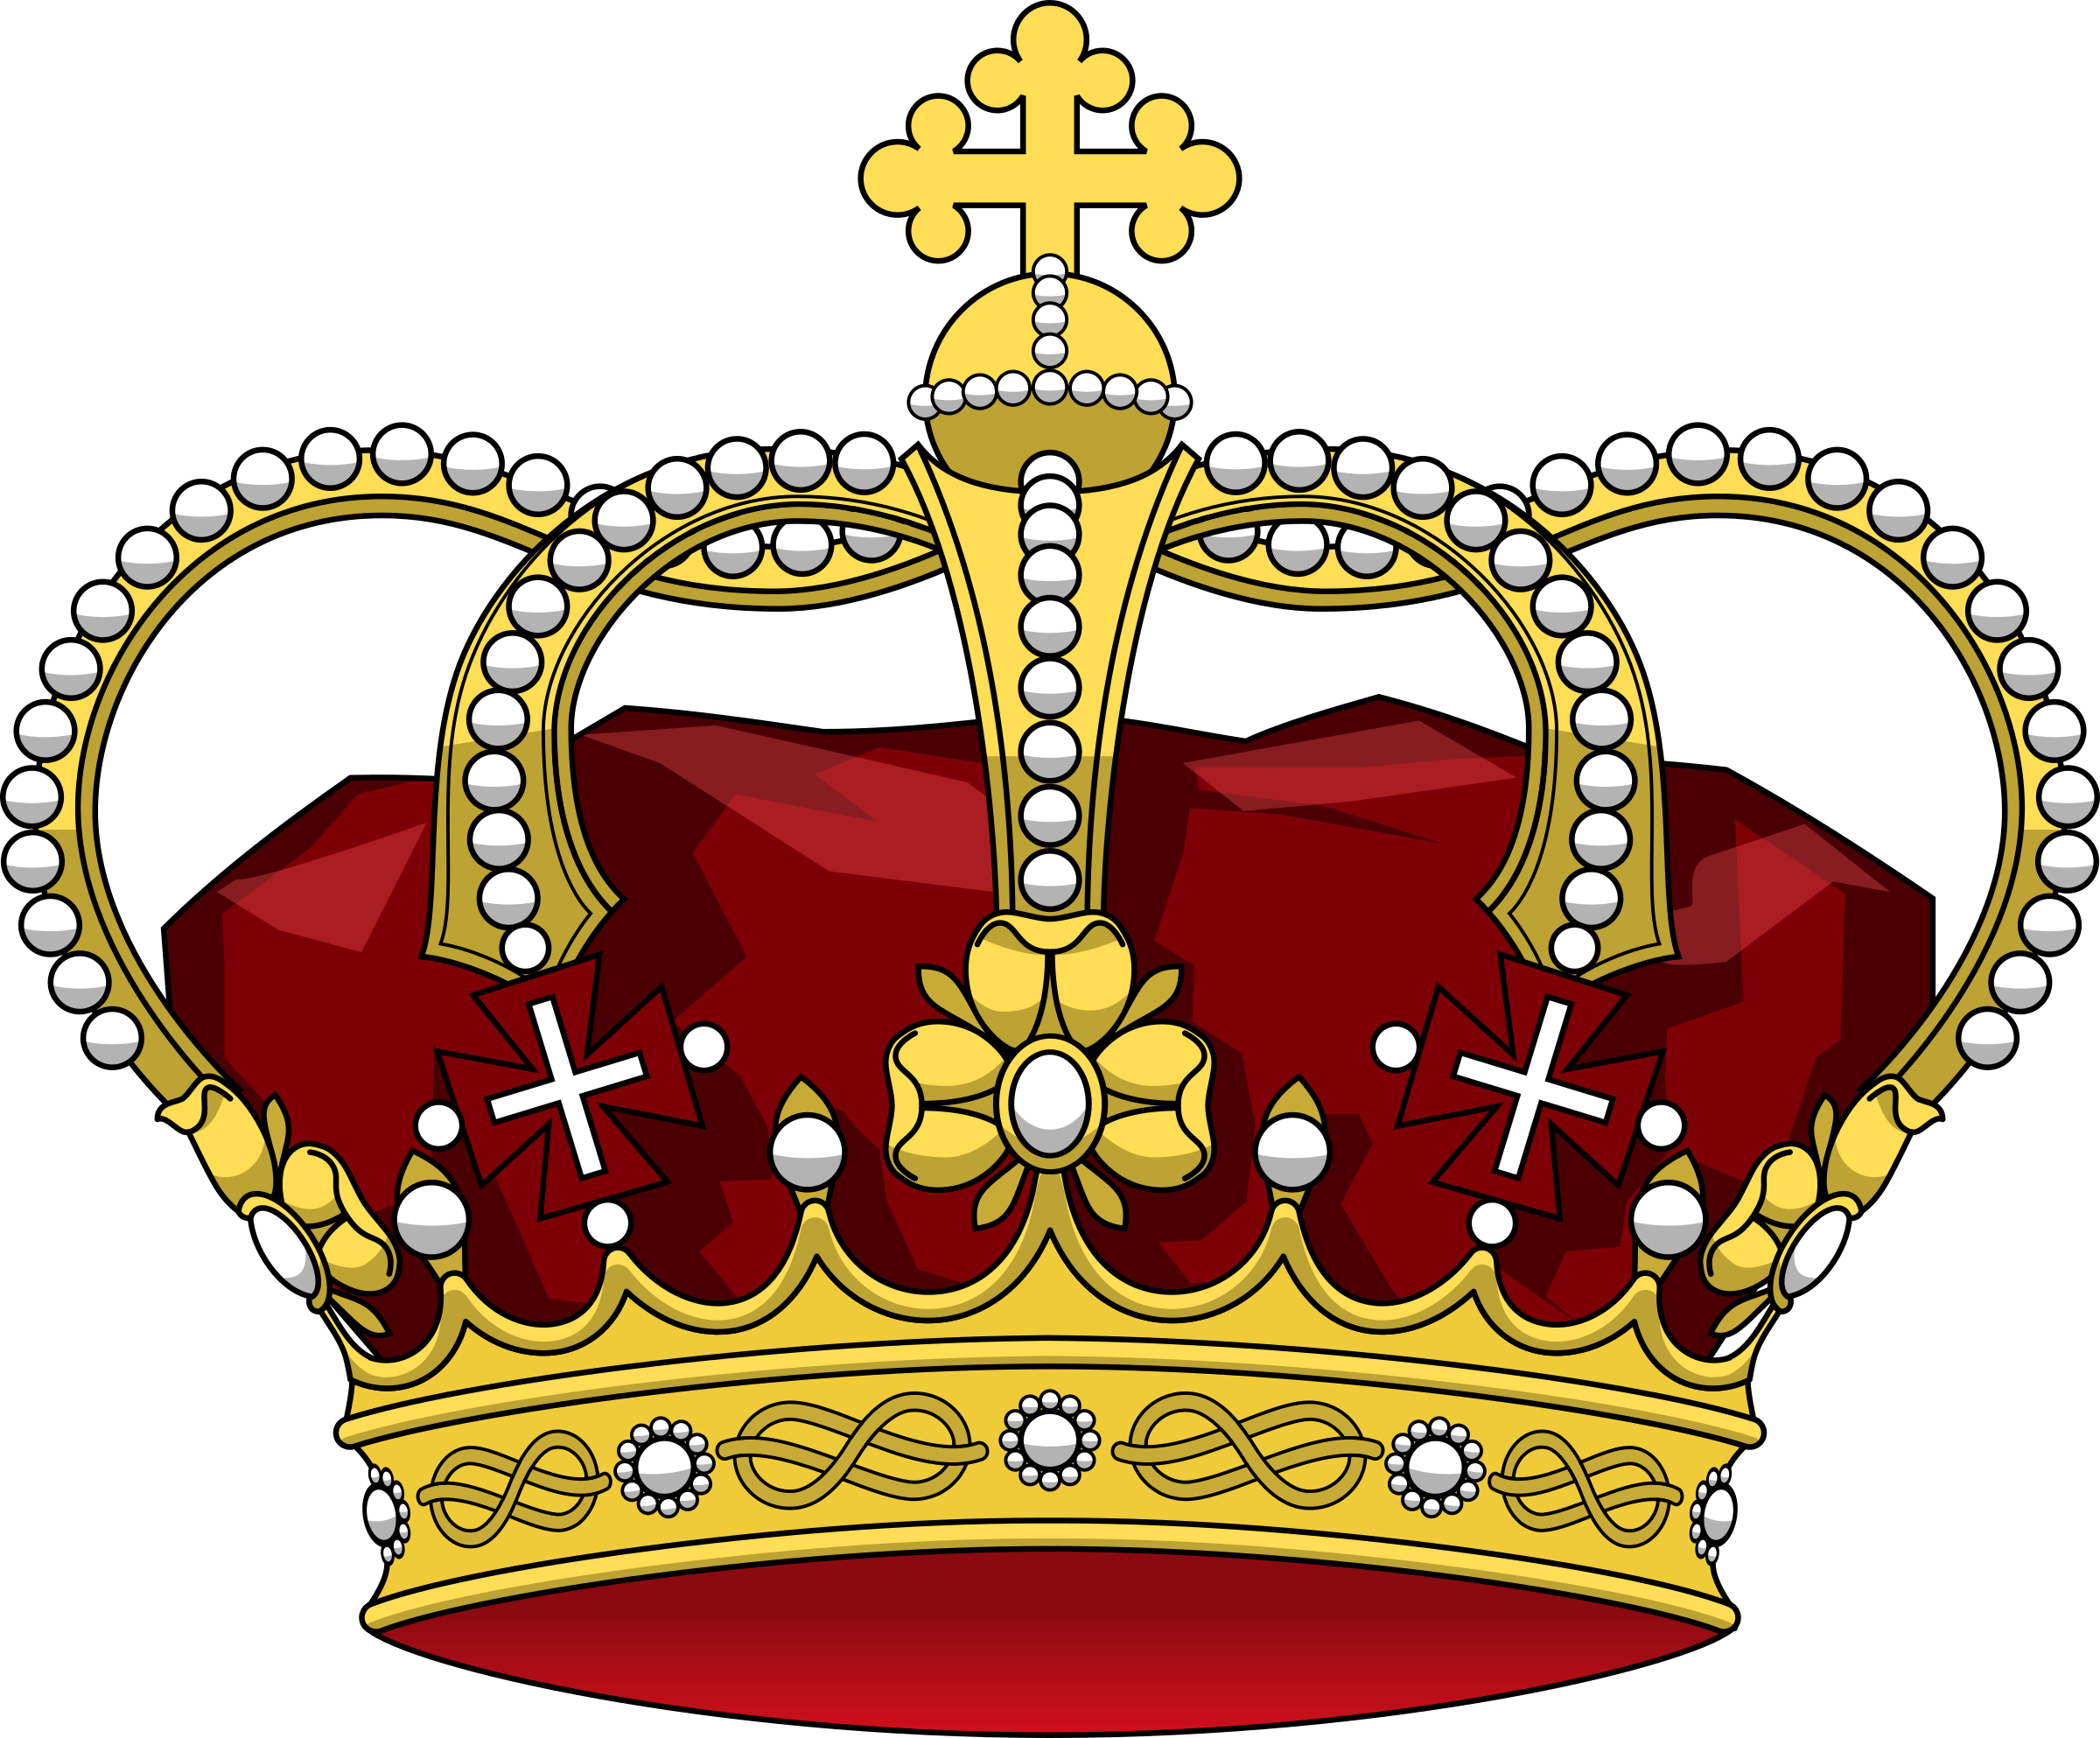 Корона монарха Король. Геральдическая корона императора. Корона короля Дании Кристиана IV. Корона Король King.